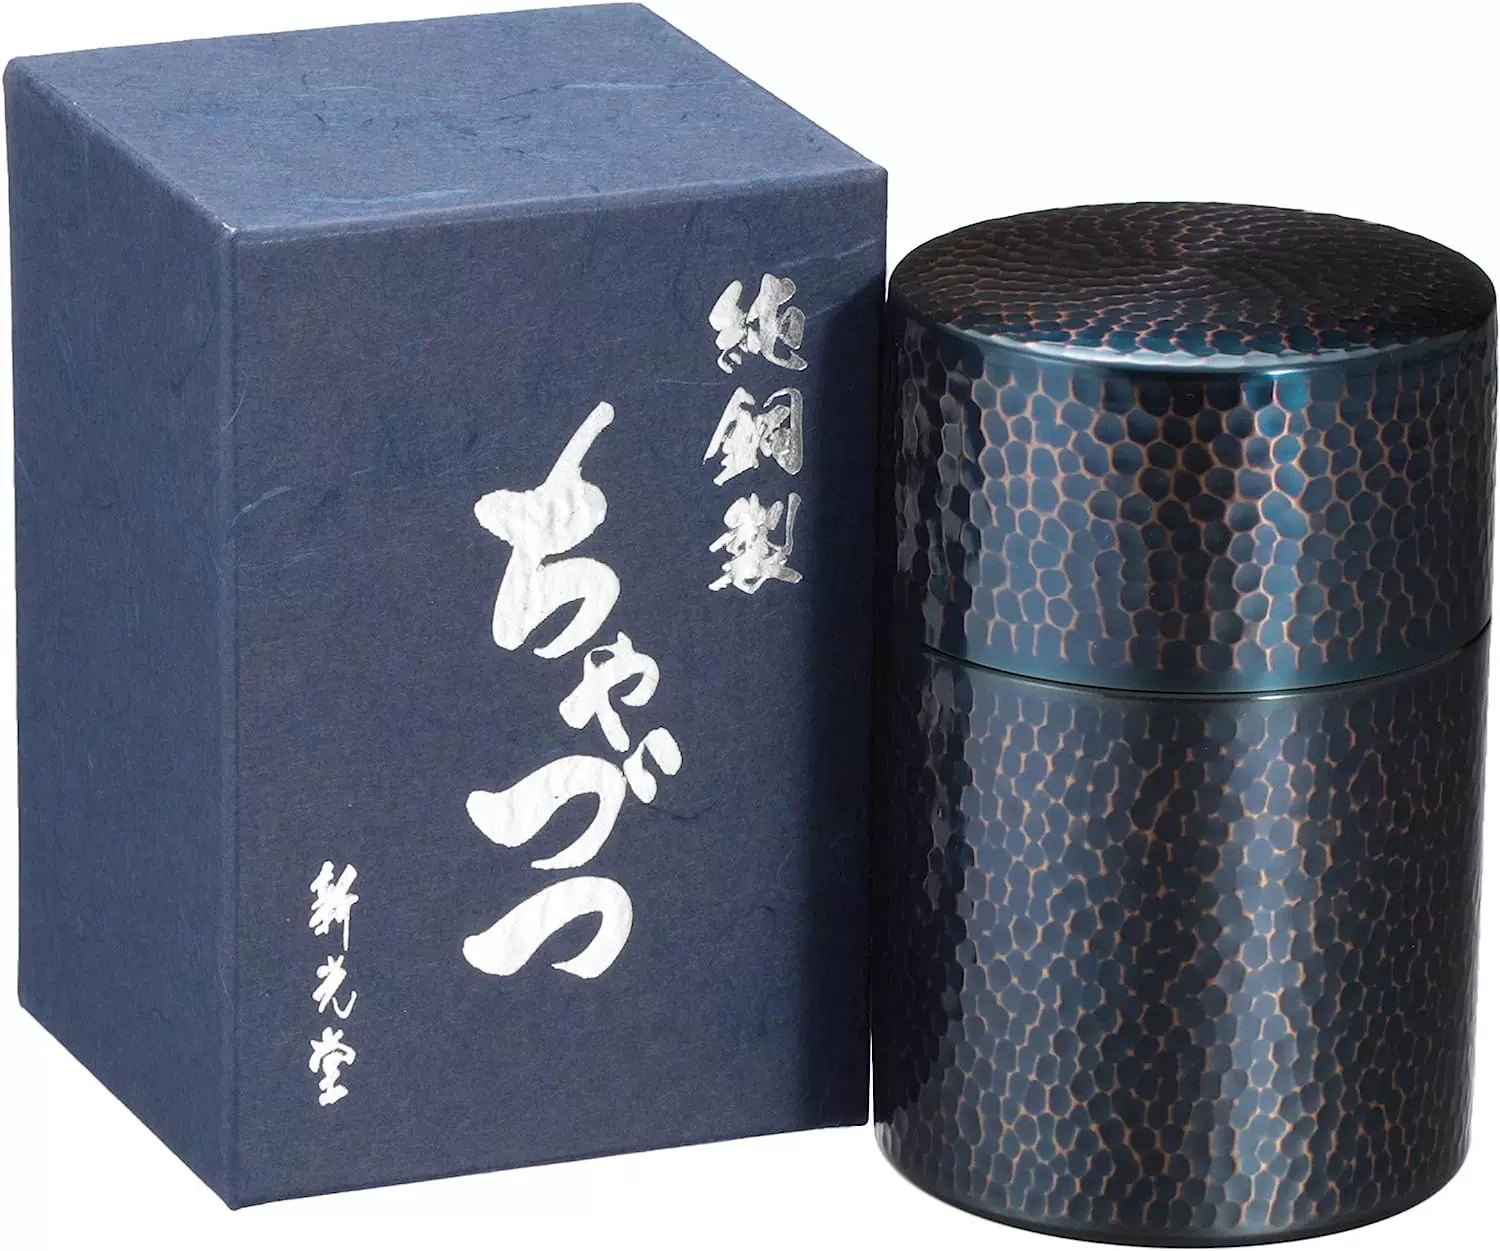 日本制新光堂新光金属茶筒青铜纯銅茶铜传统百年工艺匠工BC-306B-Taobao 